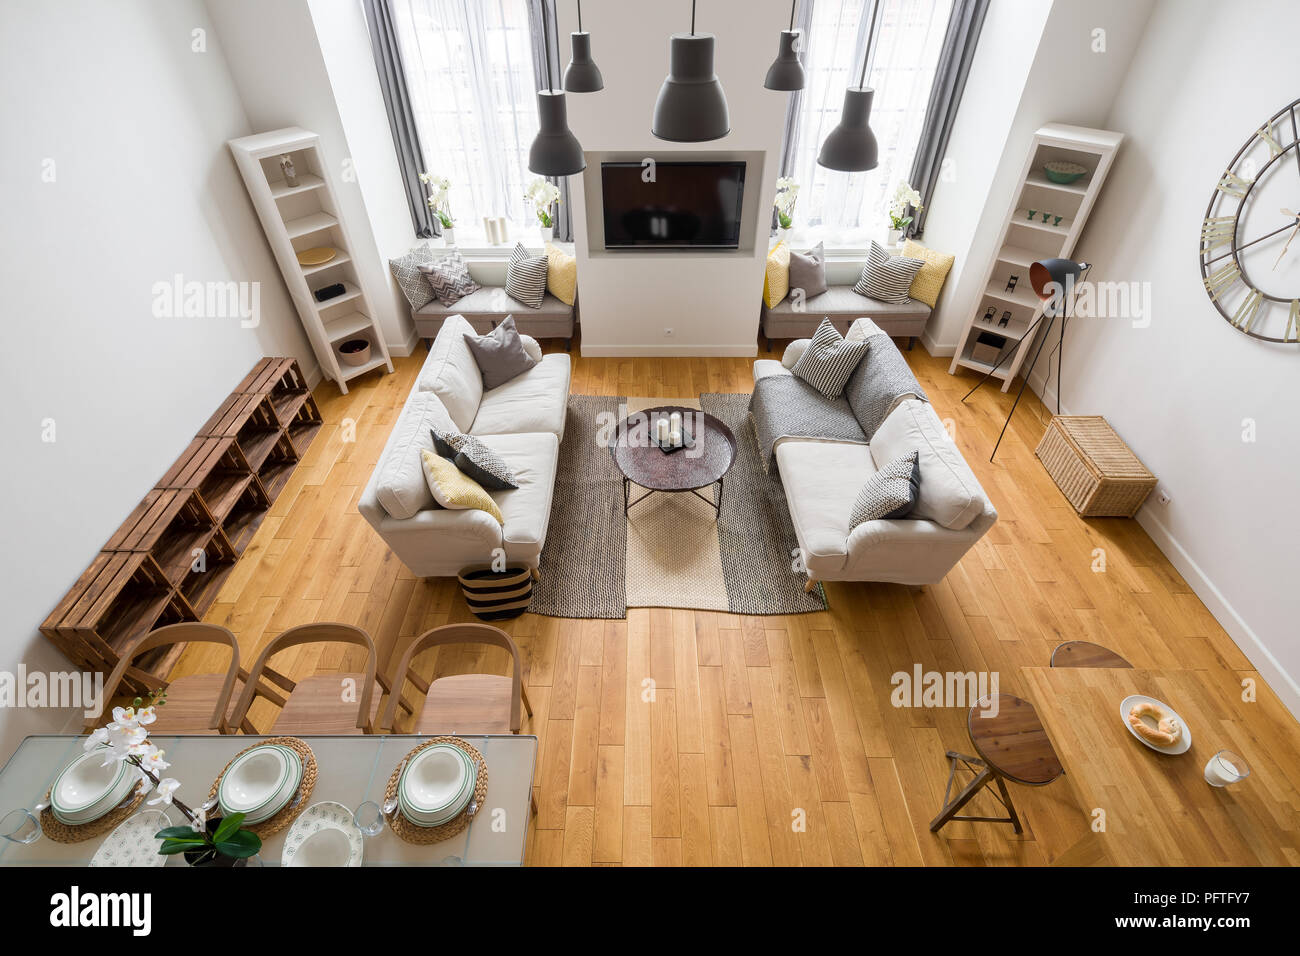 Mountain style Wohnzimmer mit Parkett, zwei Sofas und Esstisch  Stockfotografie - Alamy